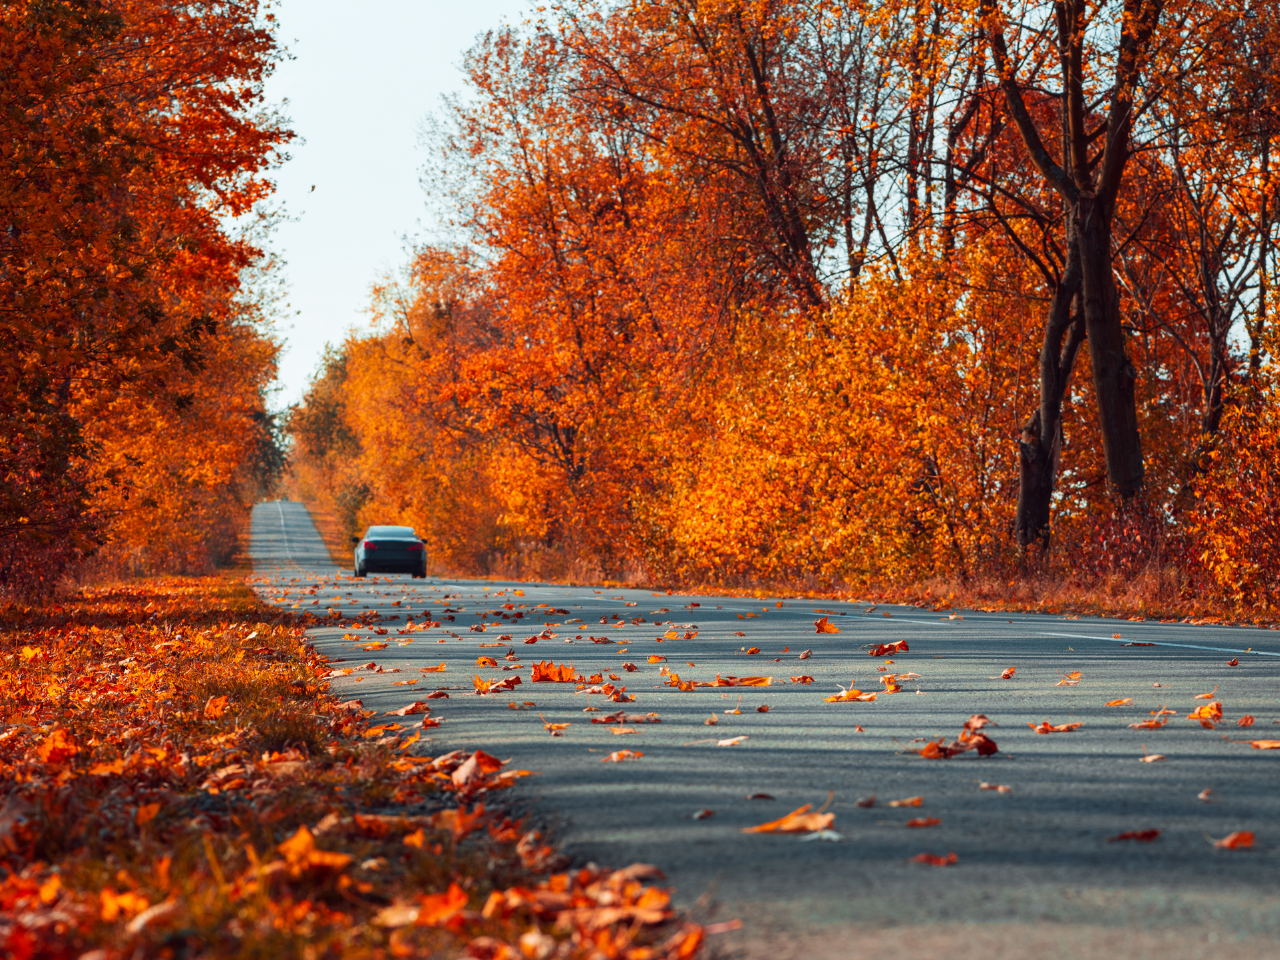 A car driving through bright orange, fall foliage